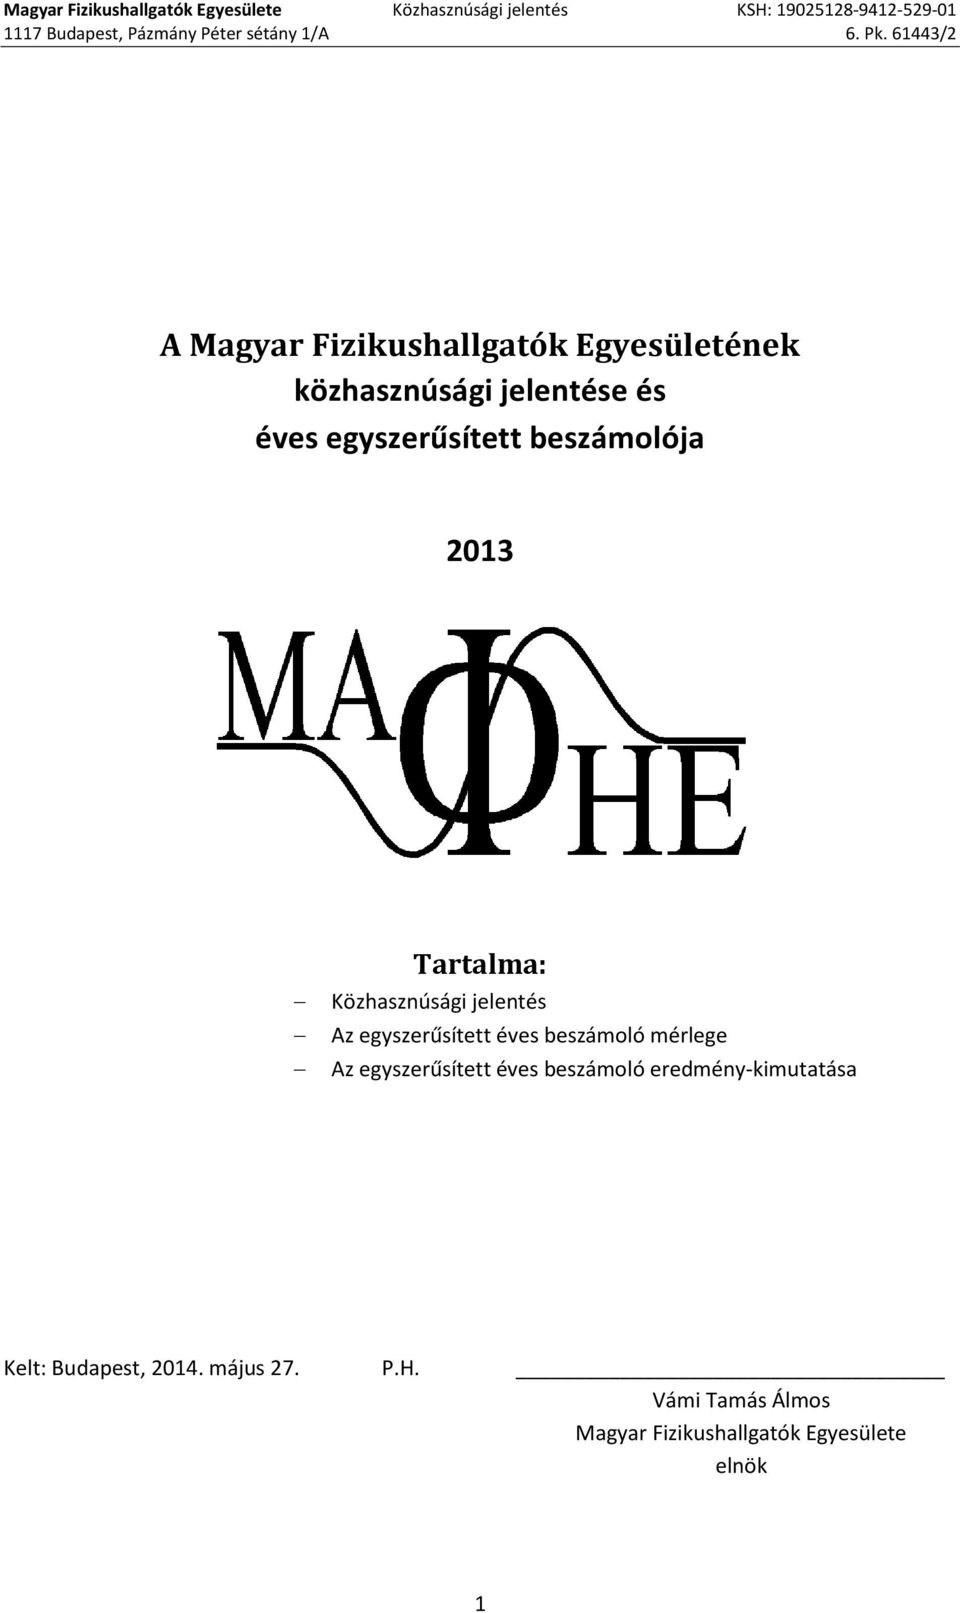 61443/2 A Magyar Fizikushallgatók Egyesületének közhasznúsági jelentése és éves egyszerűsített beszámolója 2013